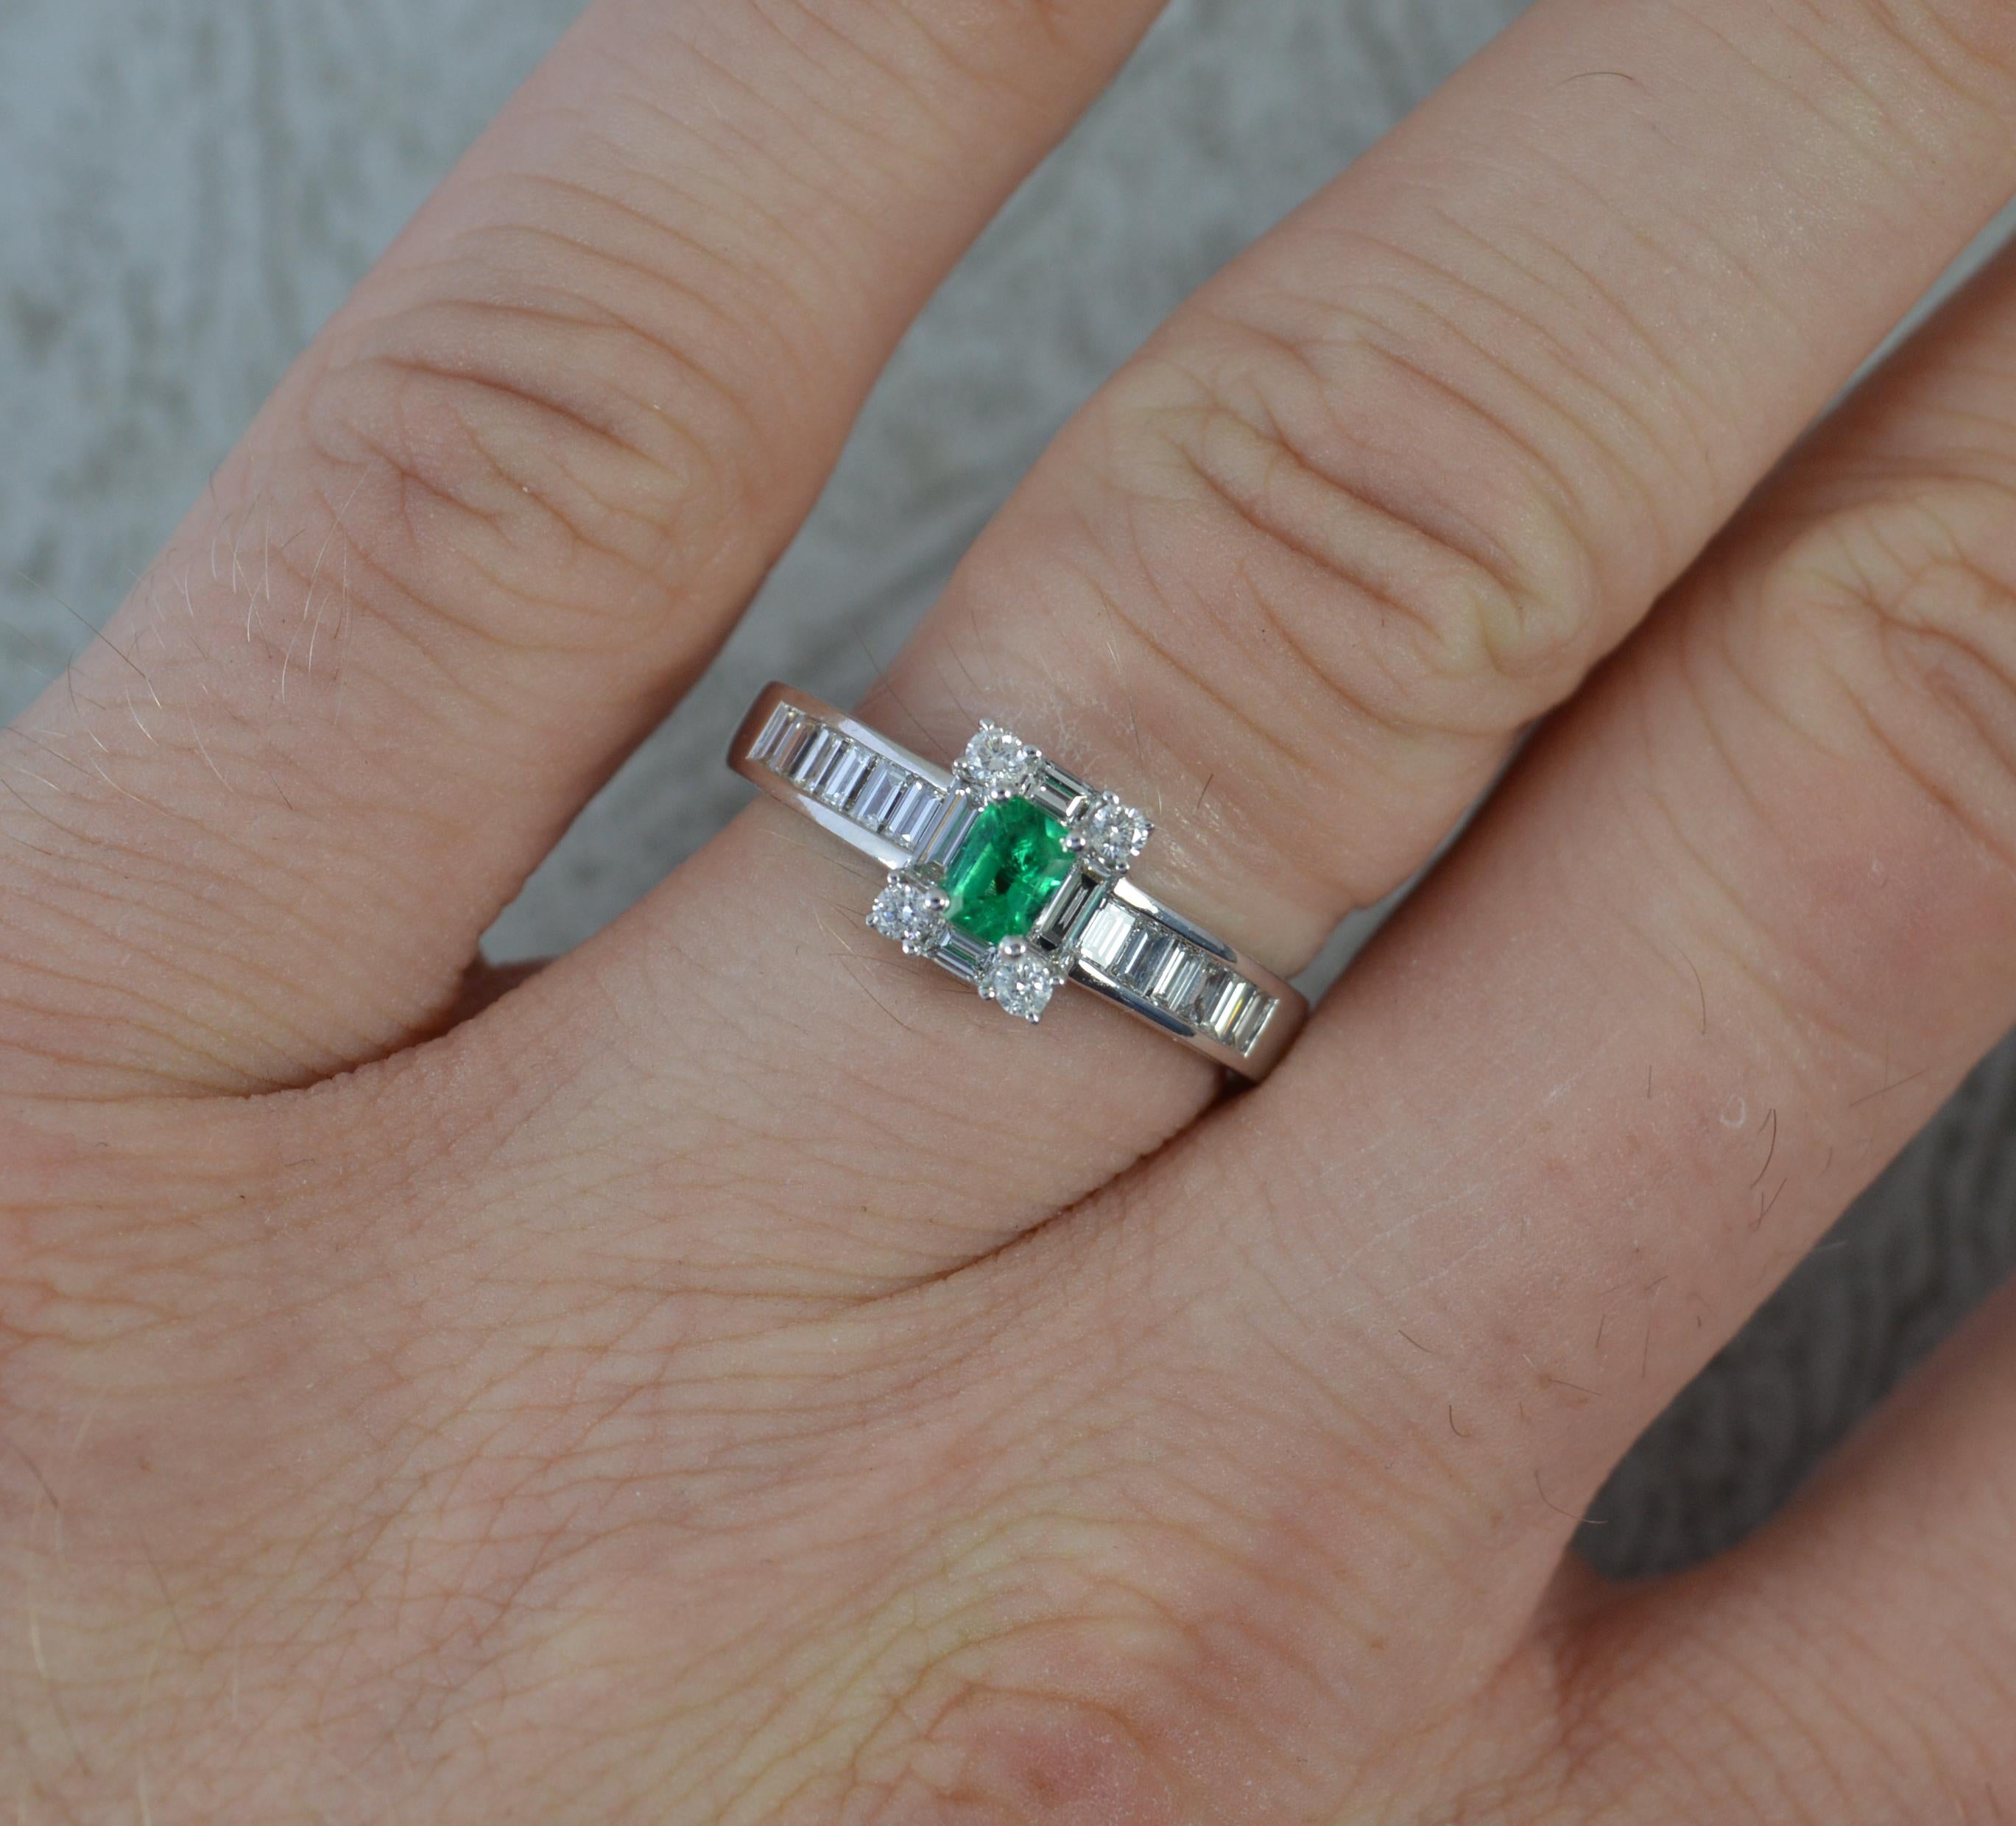 Ein atemberaubender Ring mit Smaragd- und Diamantencluster.
Das Modell ist aus 18 Karat Weißgold gefertigt.
Mit einem Smaragd im Smaragdschliff als Mittelpunkt in einer Fassung mit vier Krallen. Sauber und lebendig. Umgeben von vier Smaragden und